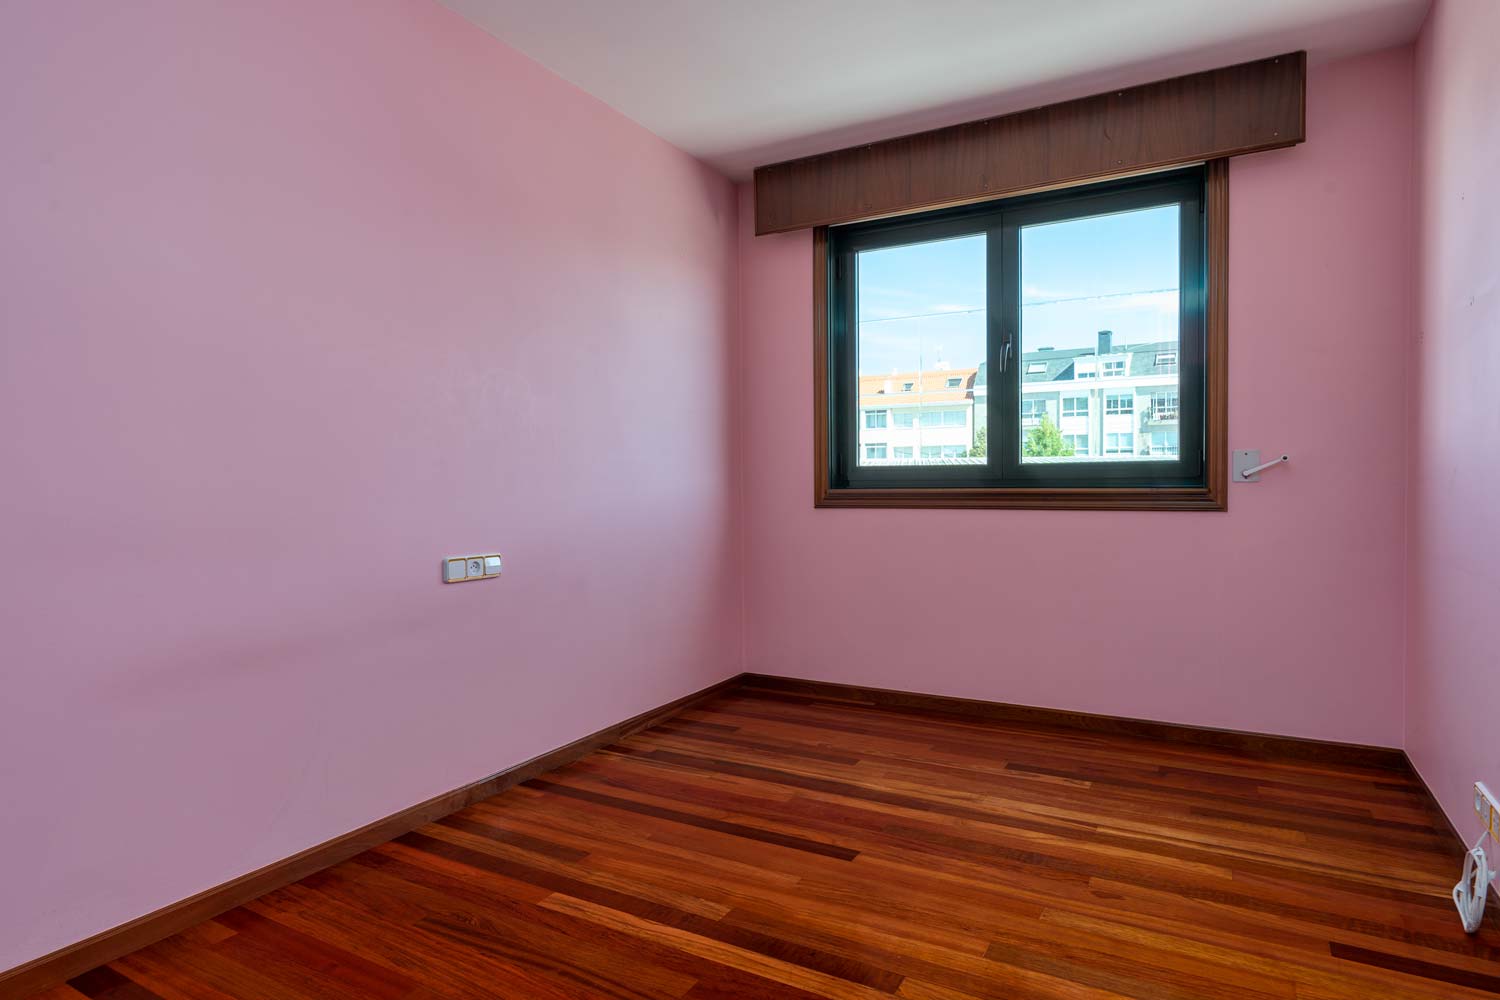 Dormitorio rosa vacío en piso Betanzos con ventana de pvc verde_vistas despejadas